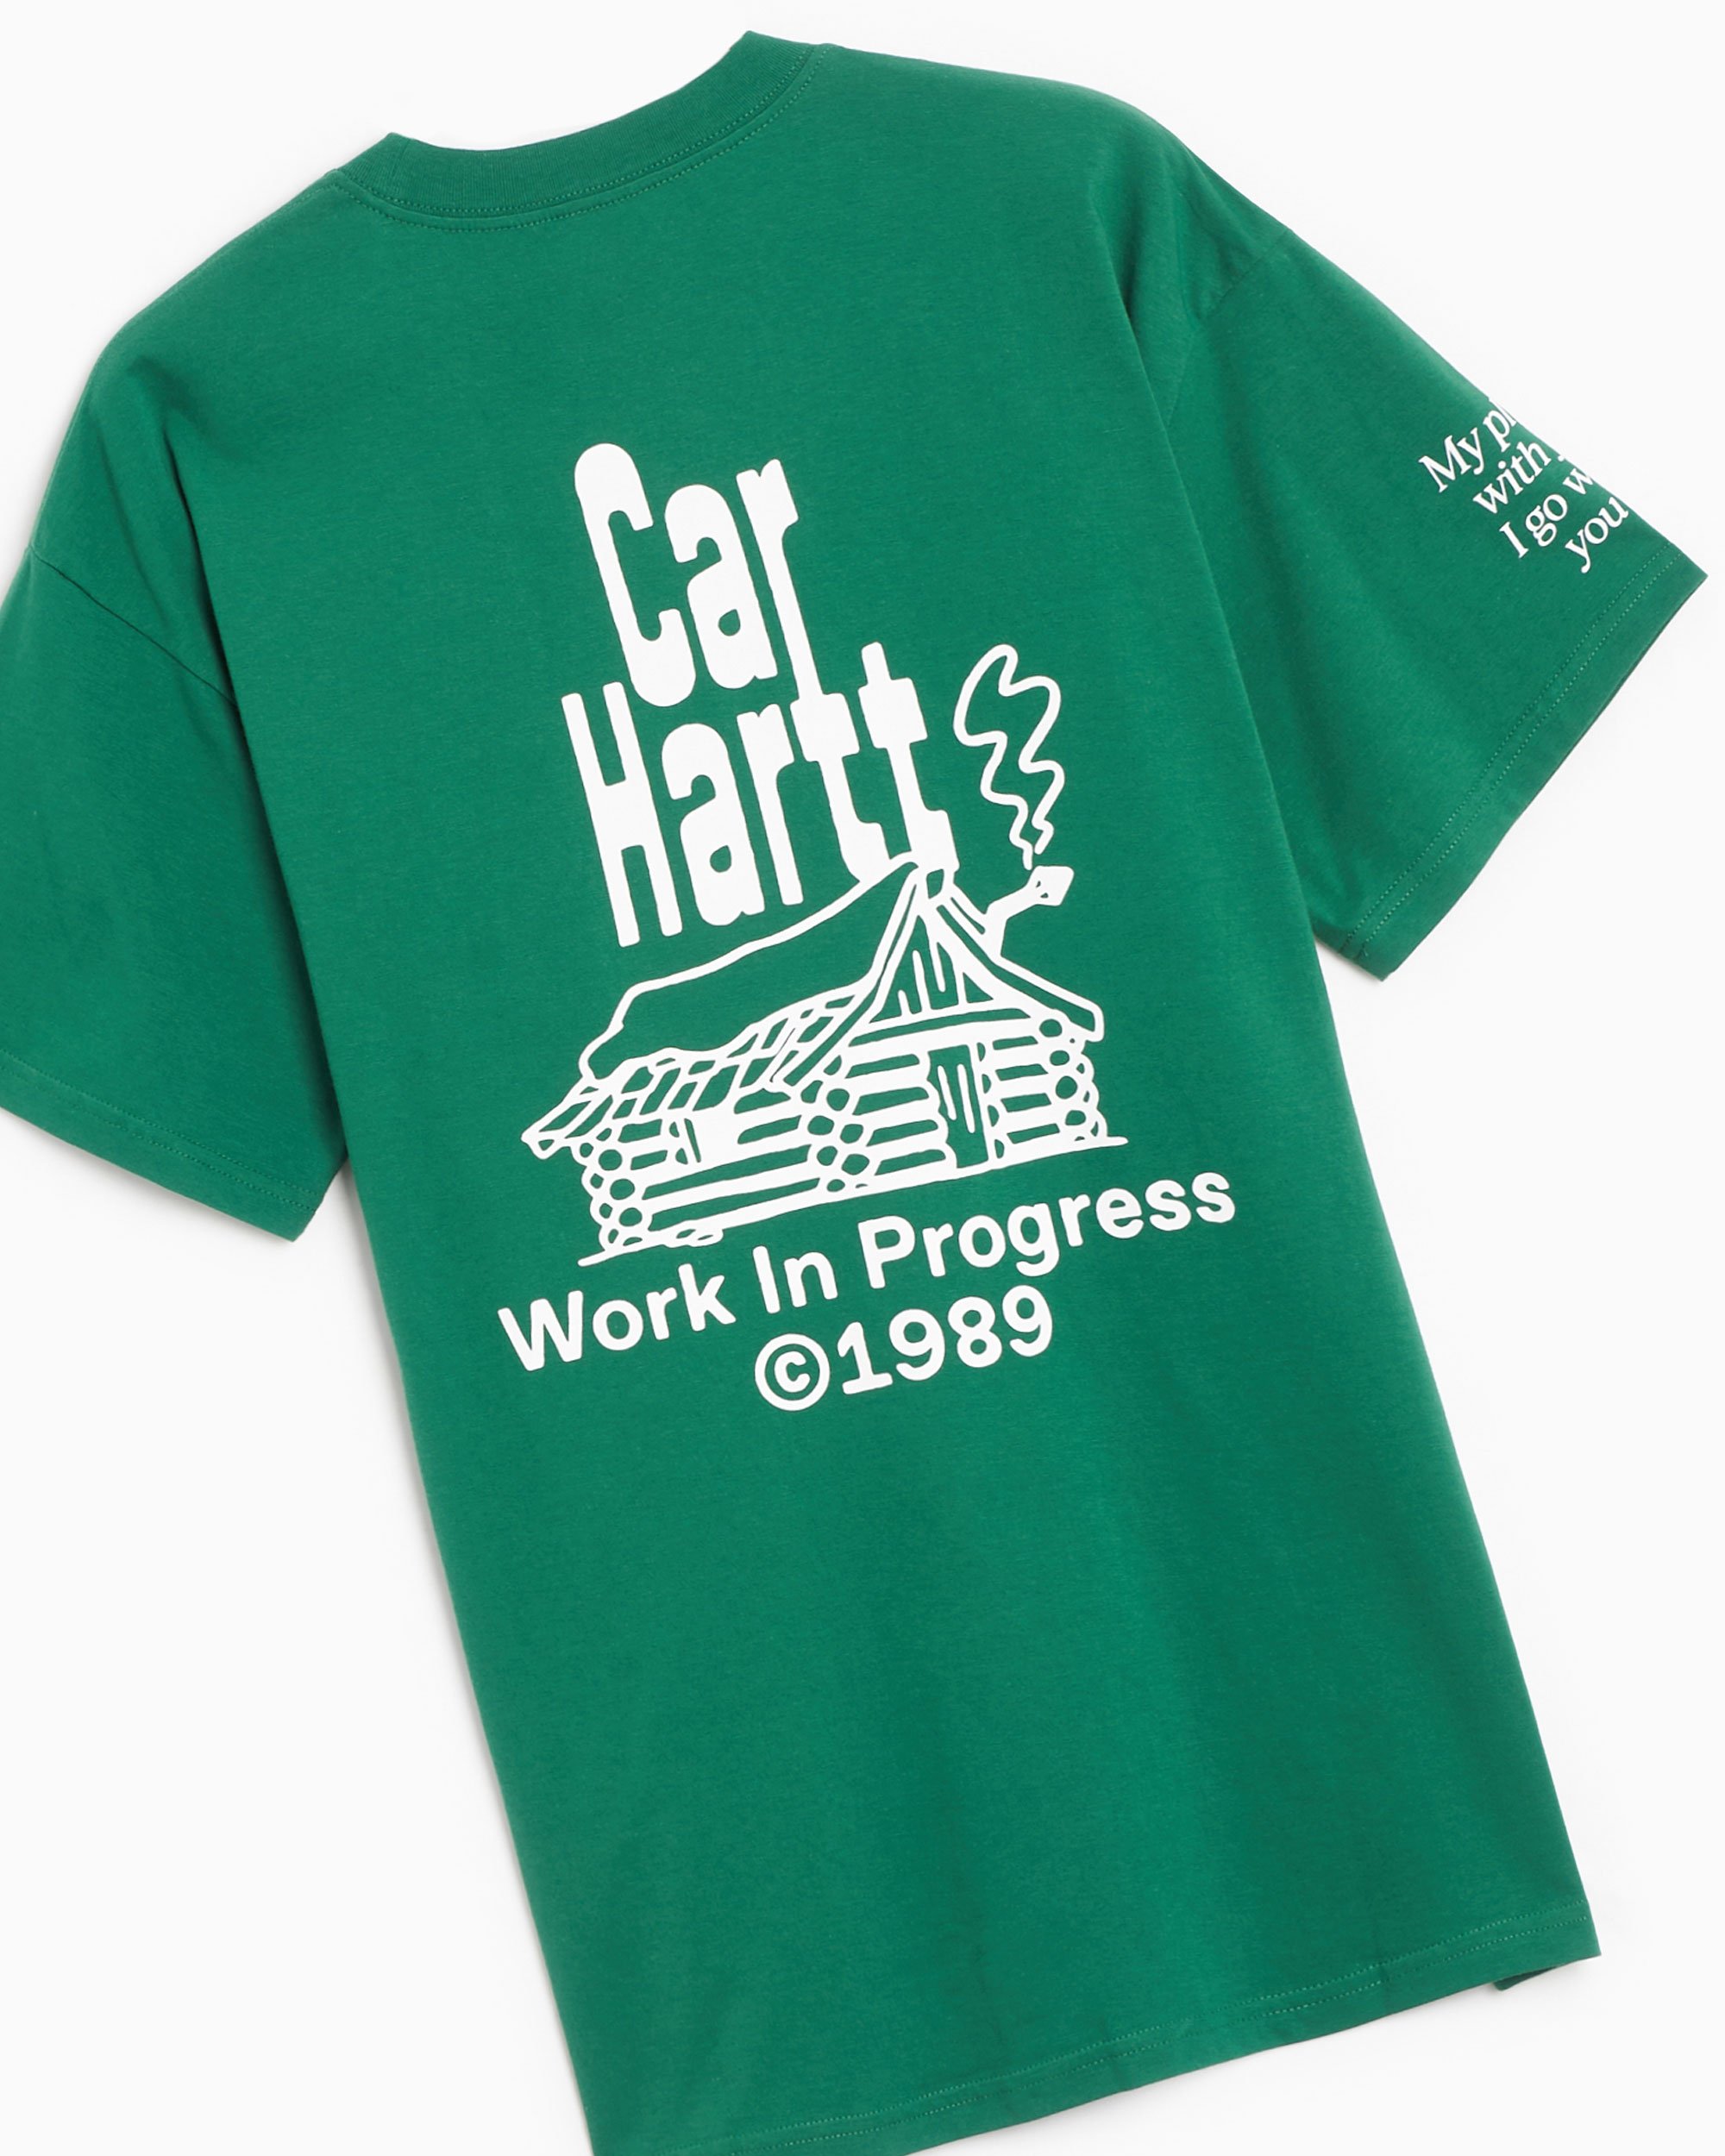 Carhartt homme  T-shirt à broderie vert foncé